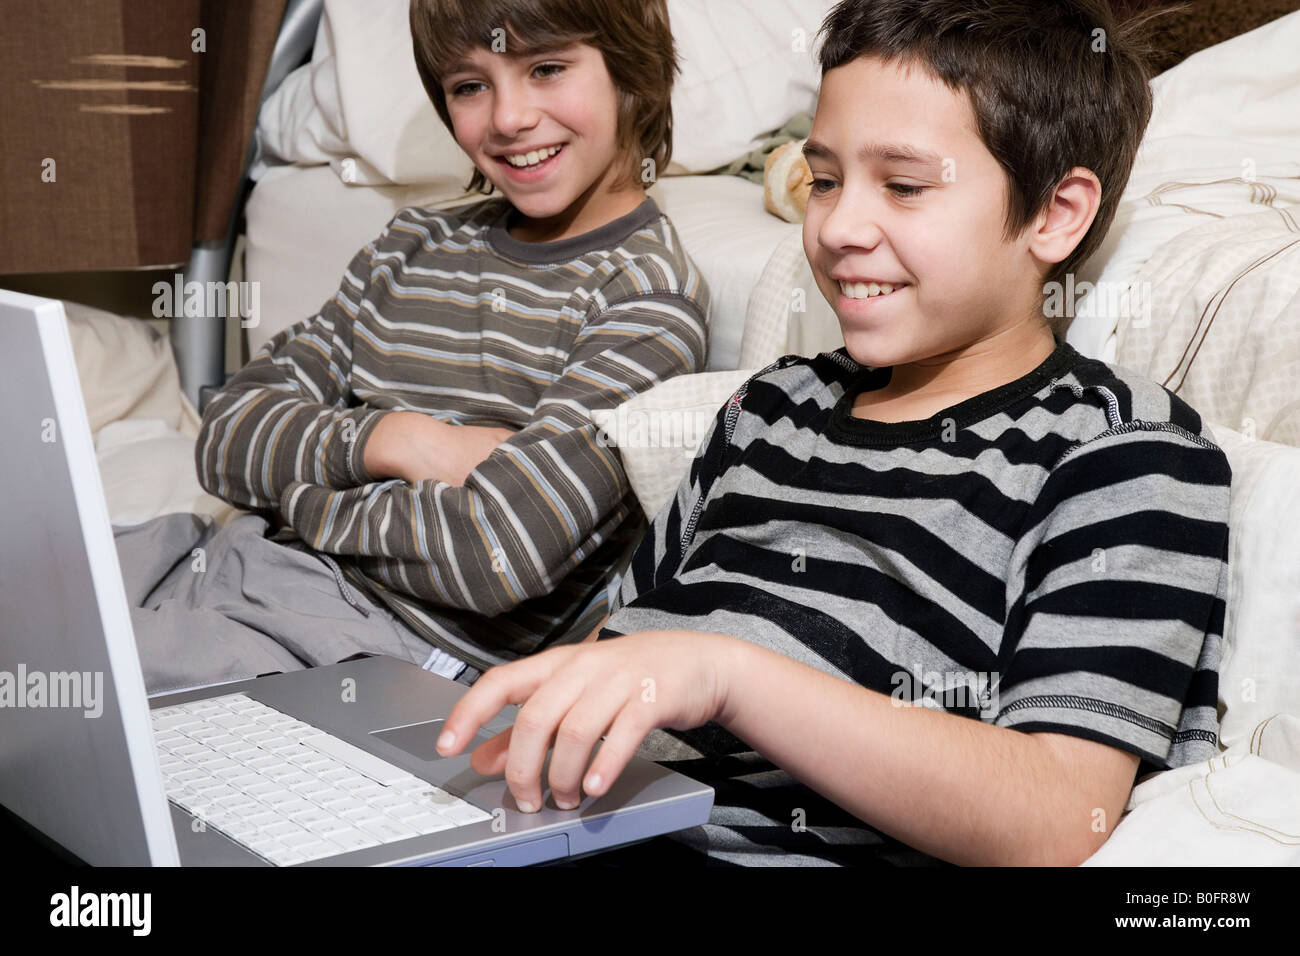 Les garçons sur ordinateur Banque D'Images